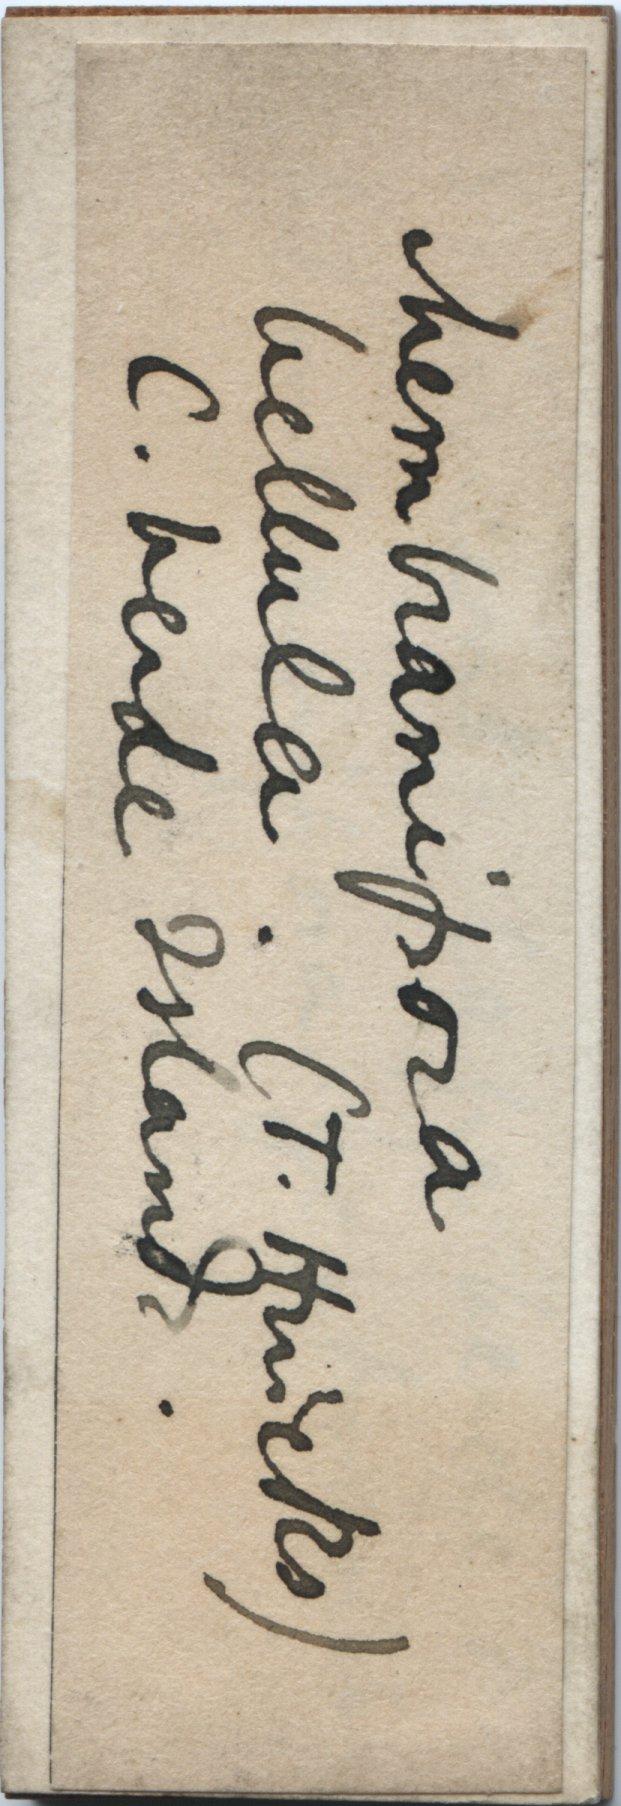 To NHMUK collection (Electra bellula (Hincks, 1881); NHMUK:ecatalogue:3585159)